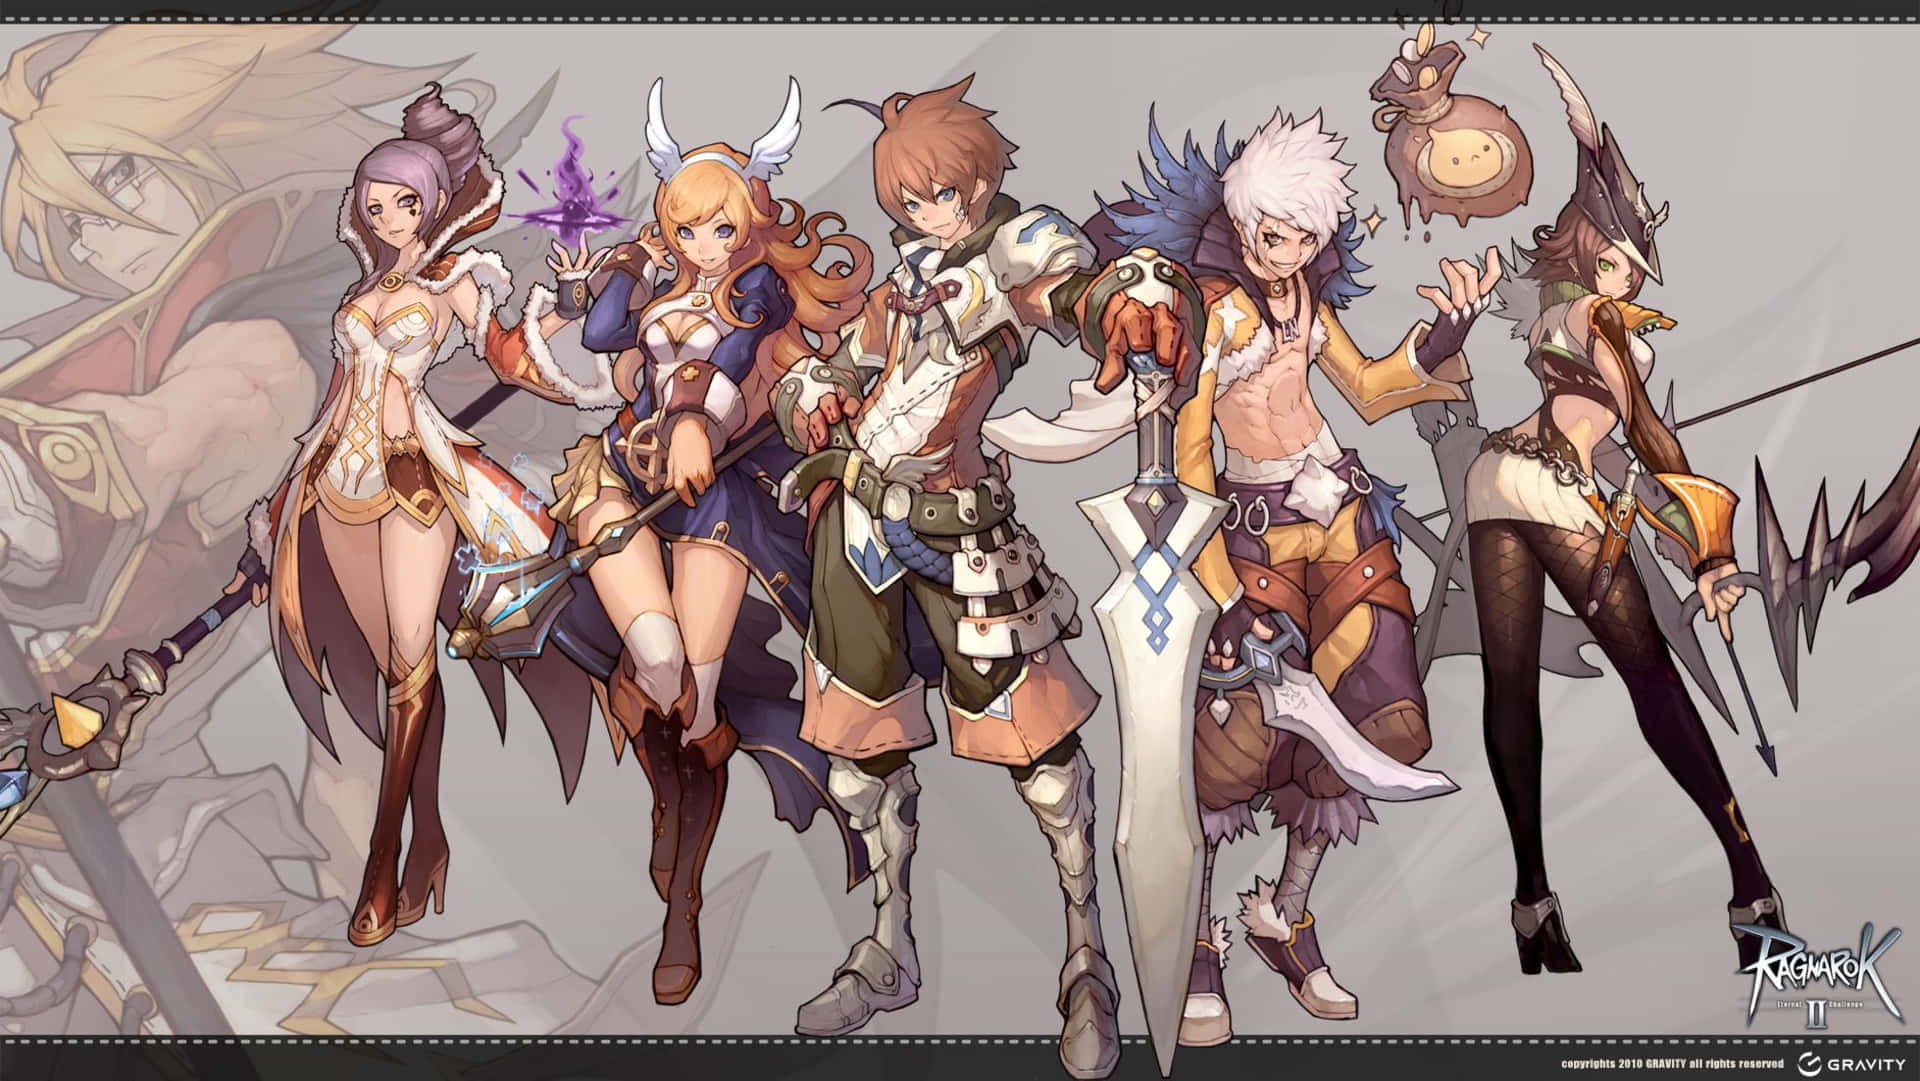 Einegruppe Von Charakteren In Einer Fantasyartigen Umgebung Wallpaper